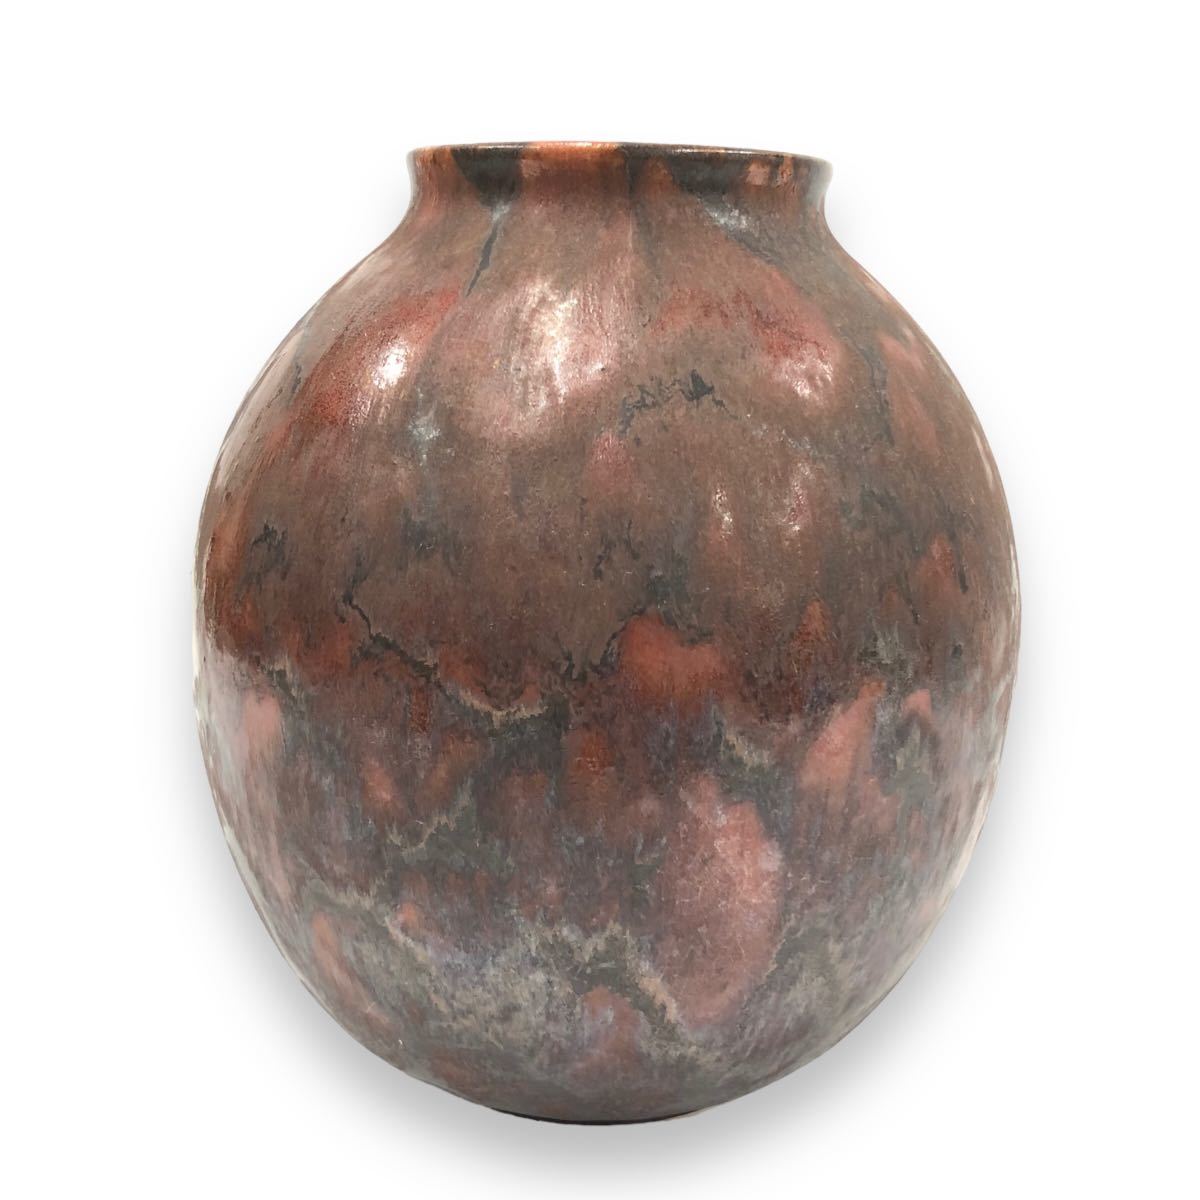  керамика . ваза цветок основа запад Германия las коричневый - фирма интерьер античный retro 